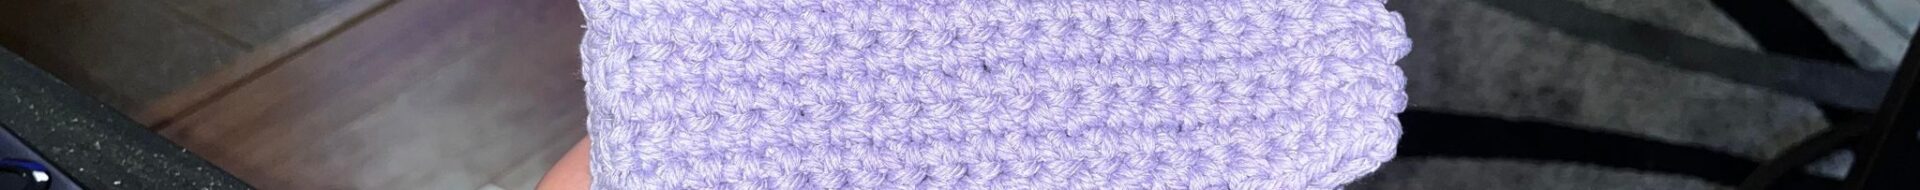 Free BETTER Crochet Purse Pattern